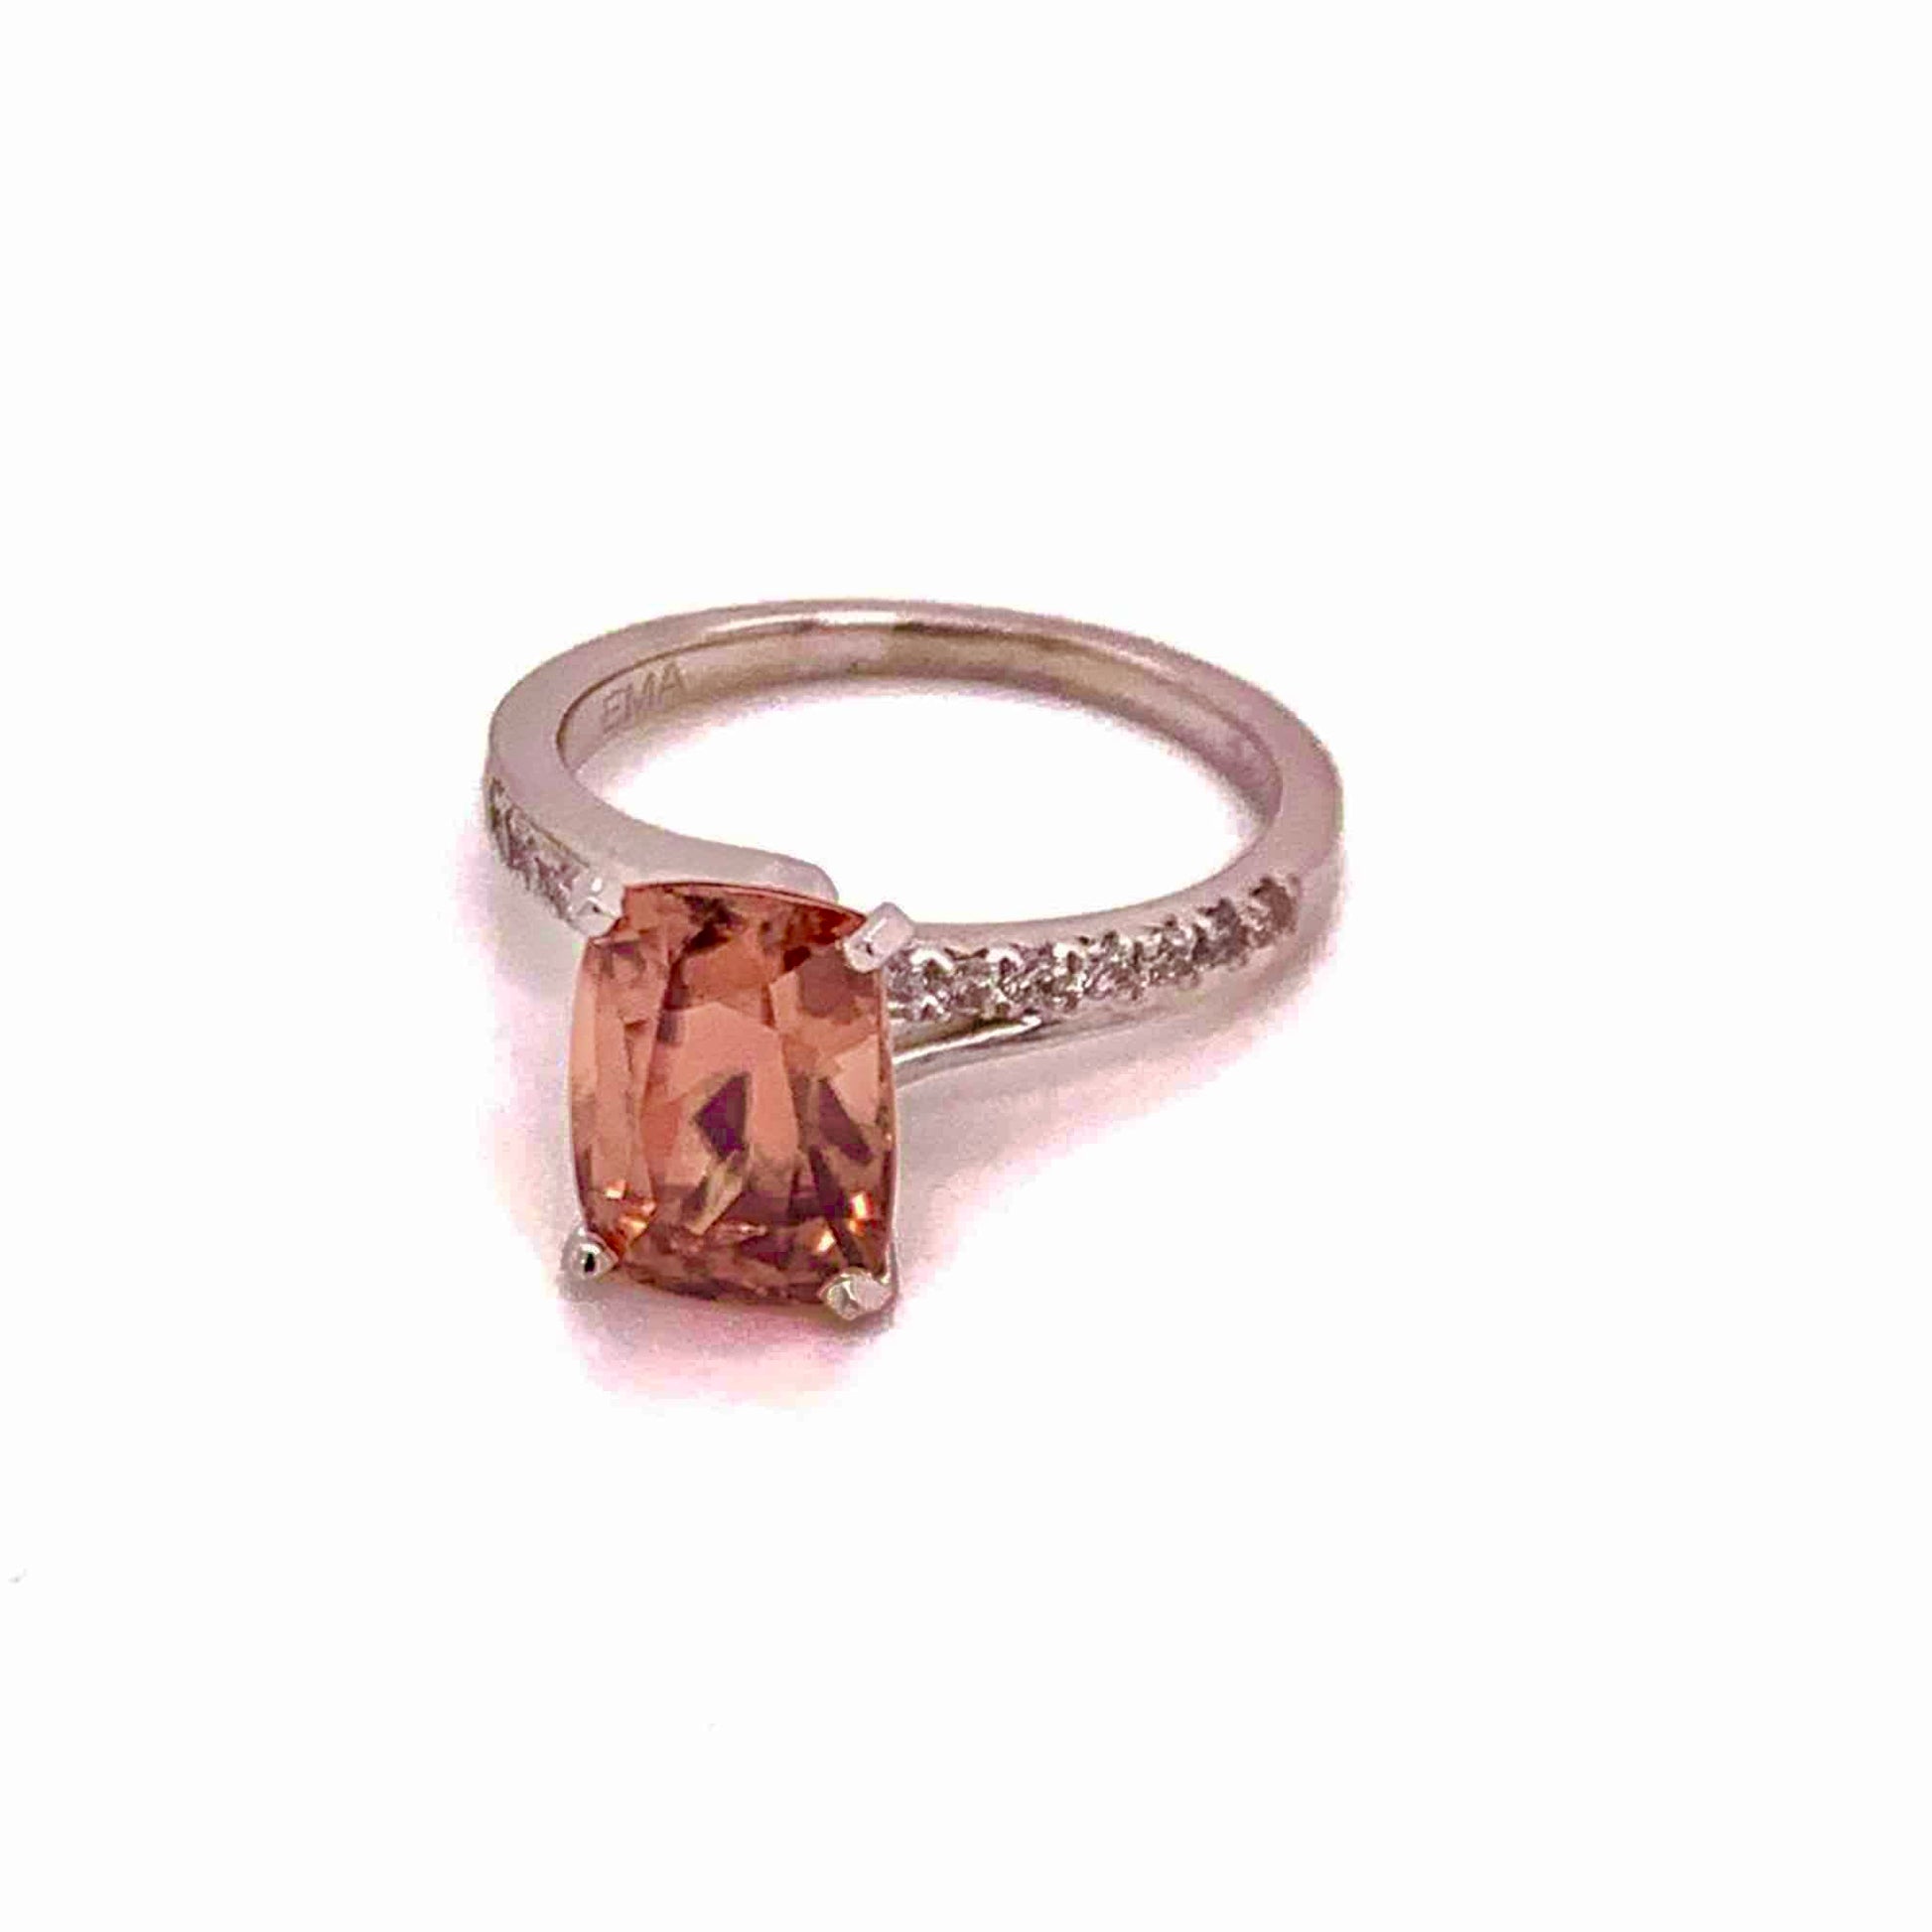 Diamond Zircon Ring 14k Gold Large 4.45 TCW Women Certified $3,100 912276 - Certified Fine Jewelry